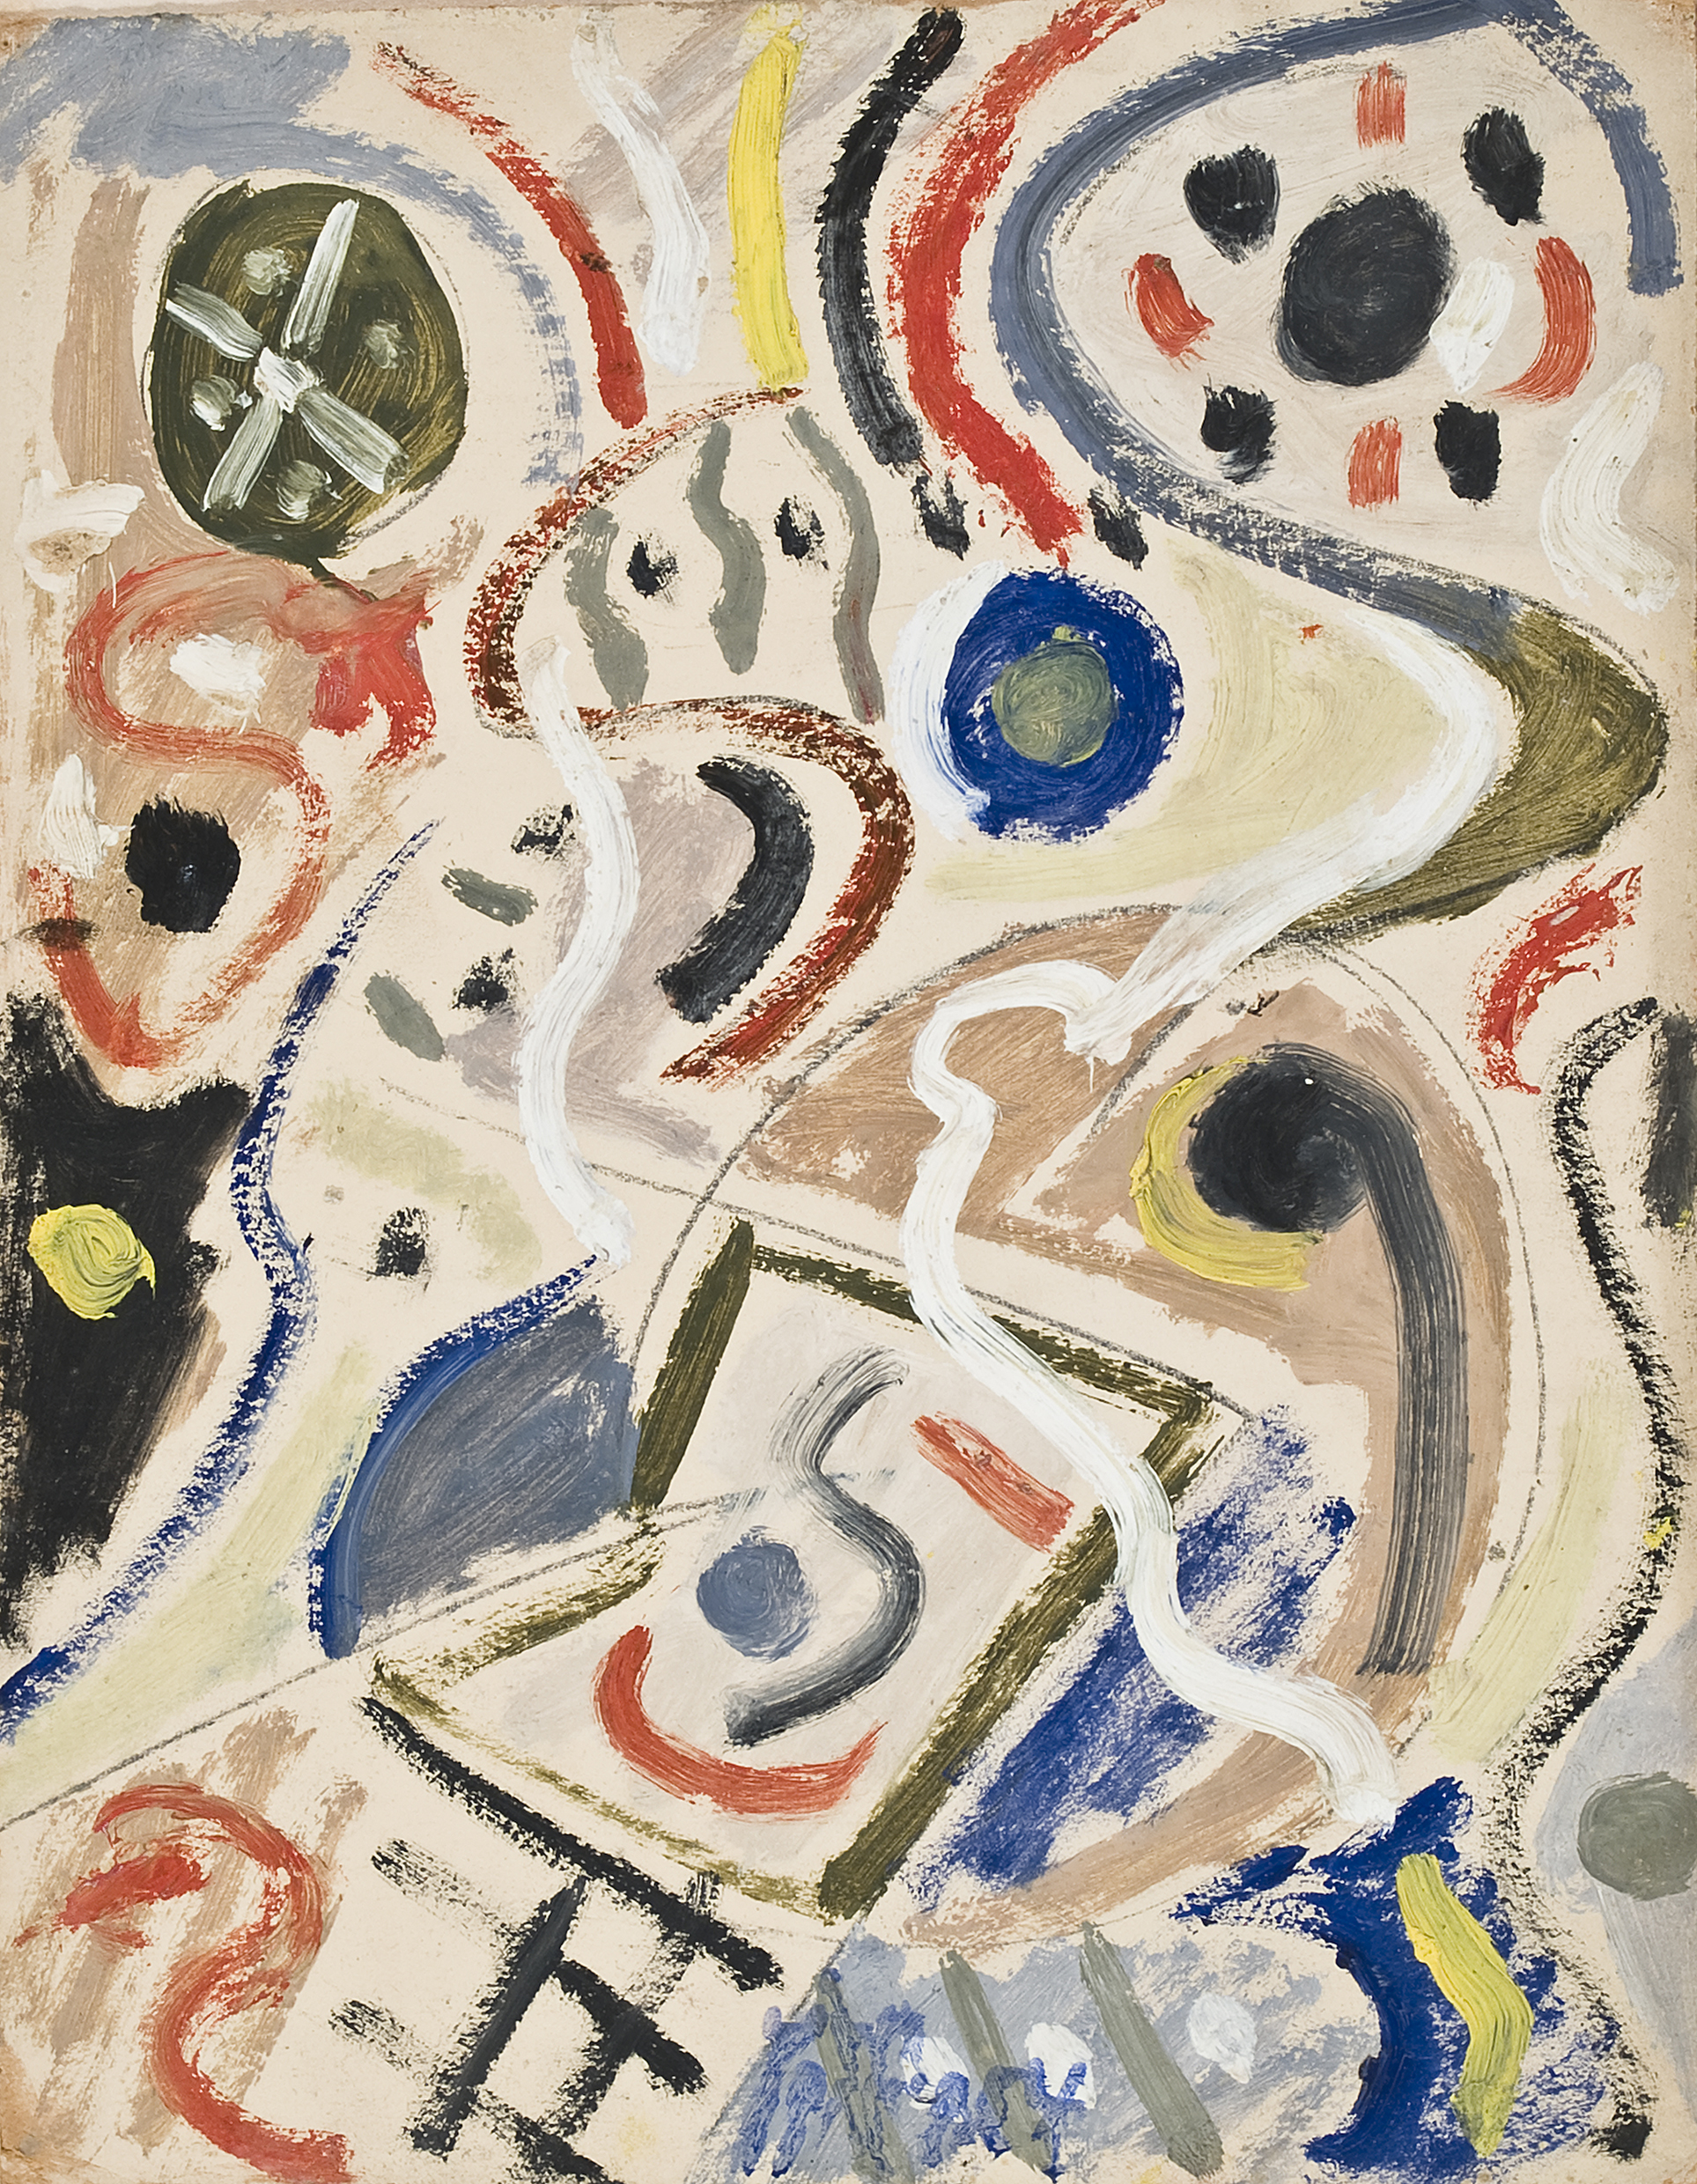 Juego con líneas y colores, c. 1954. Óleo sobre cartón, 40 x 31,5 cm